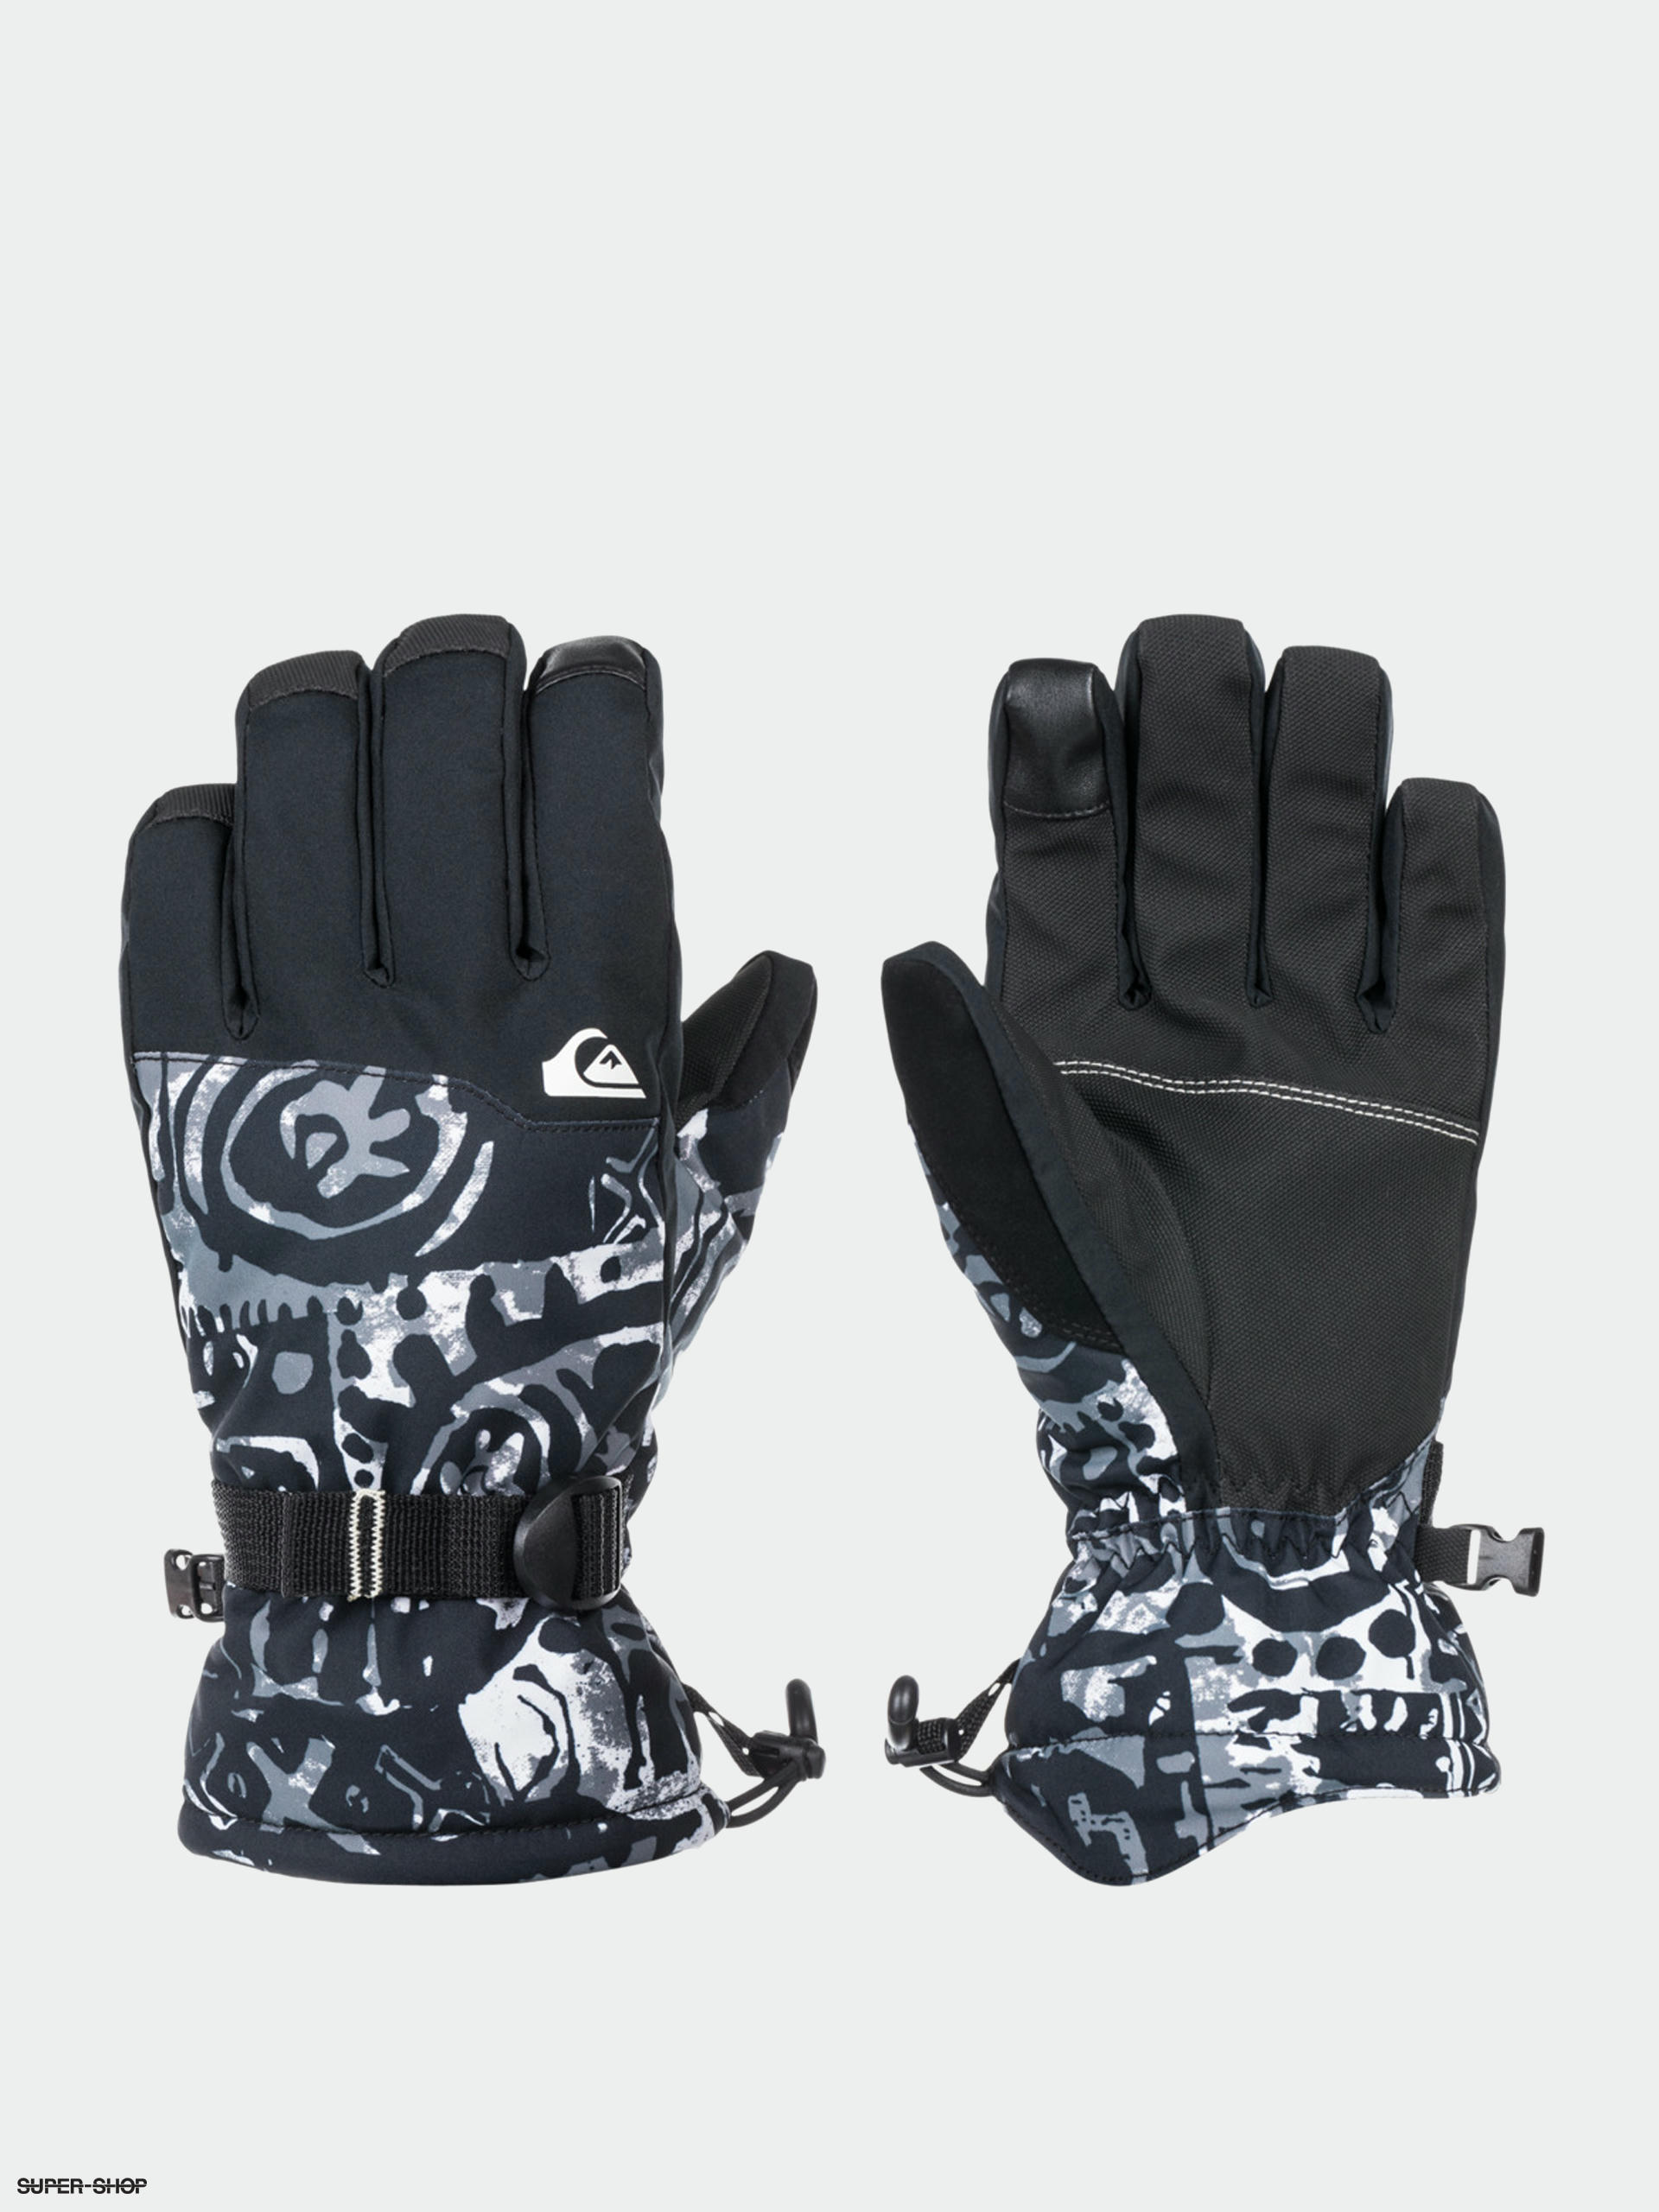 beliebte Produkte Quiksilver Mission Gloves (snow black) true heritage